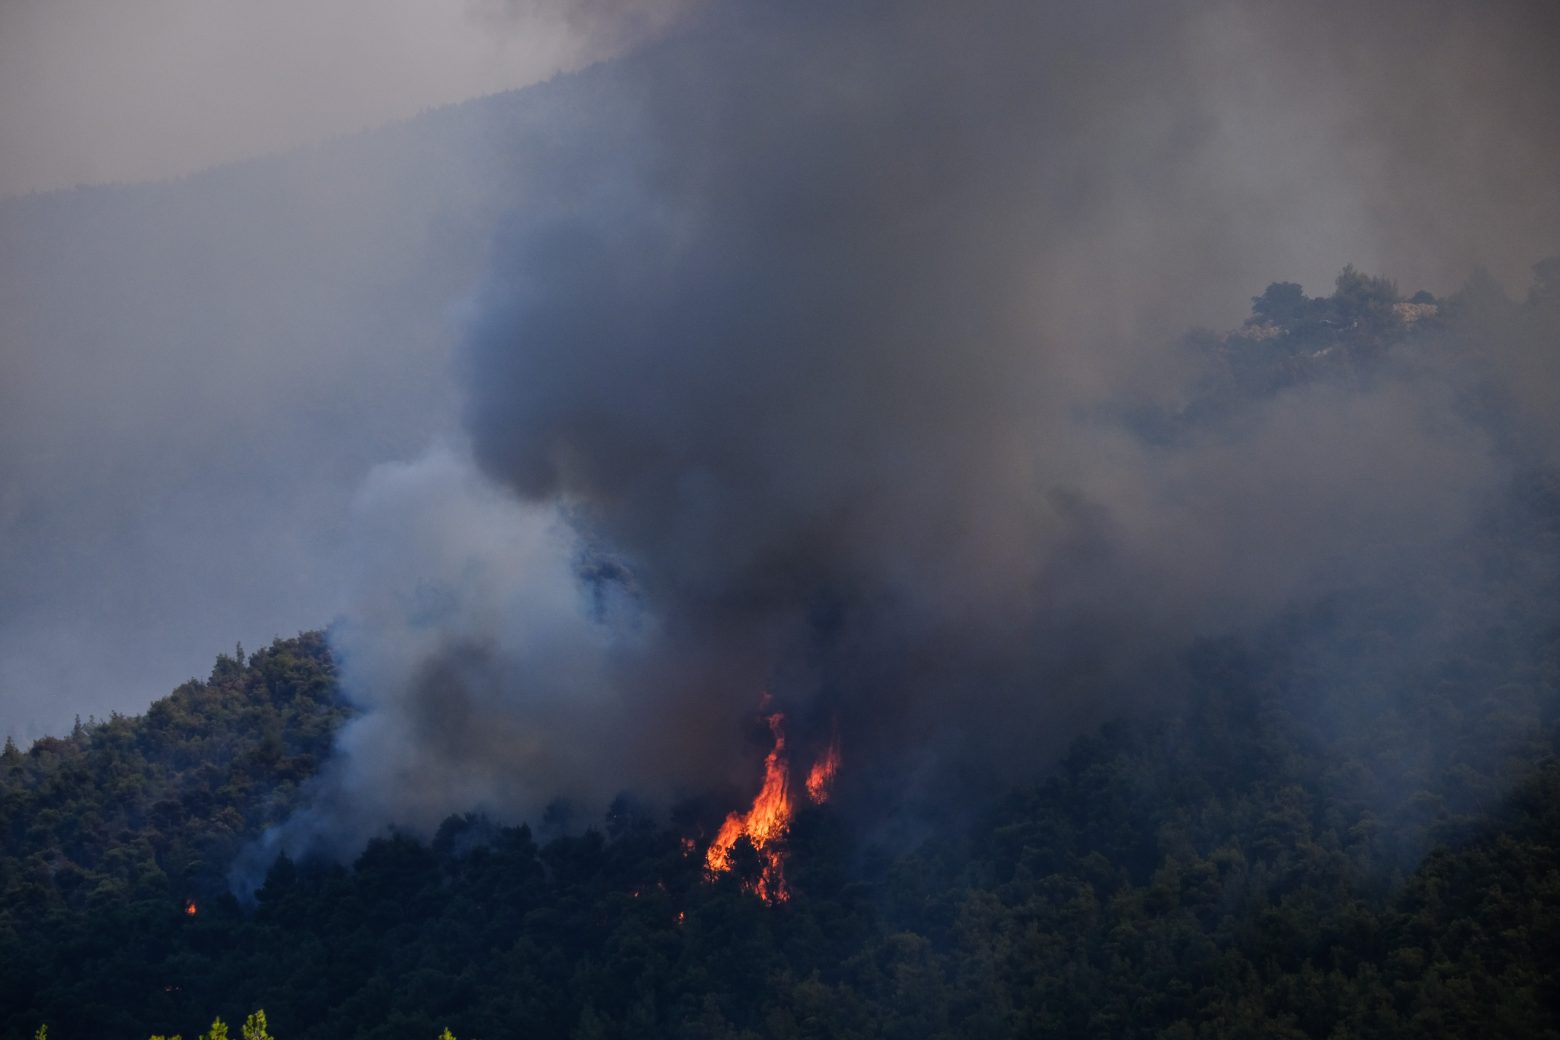 Βίλια - Μάχη με τις φλόγες σε μέτωπο 20 χιλιομέτρων - Καίγεται πυκνό πευκοδάσος, ανεξέλεγκτη η κατάσταση